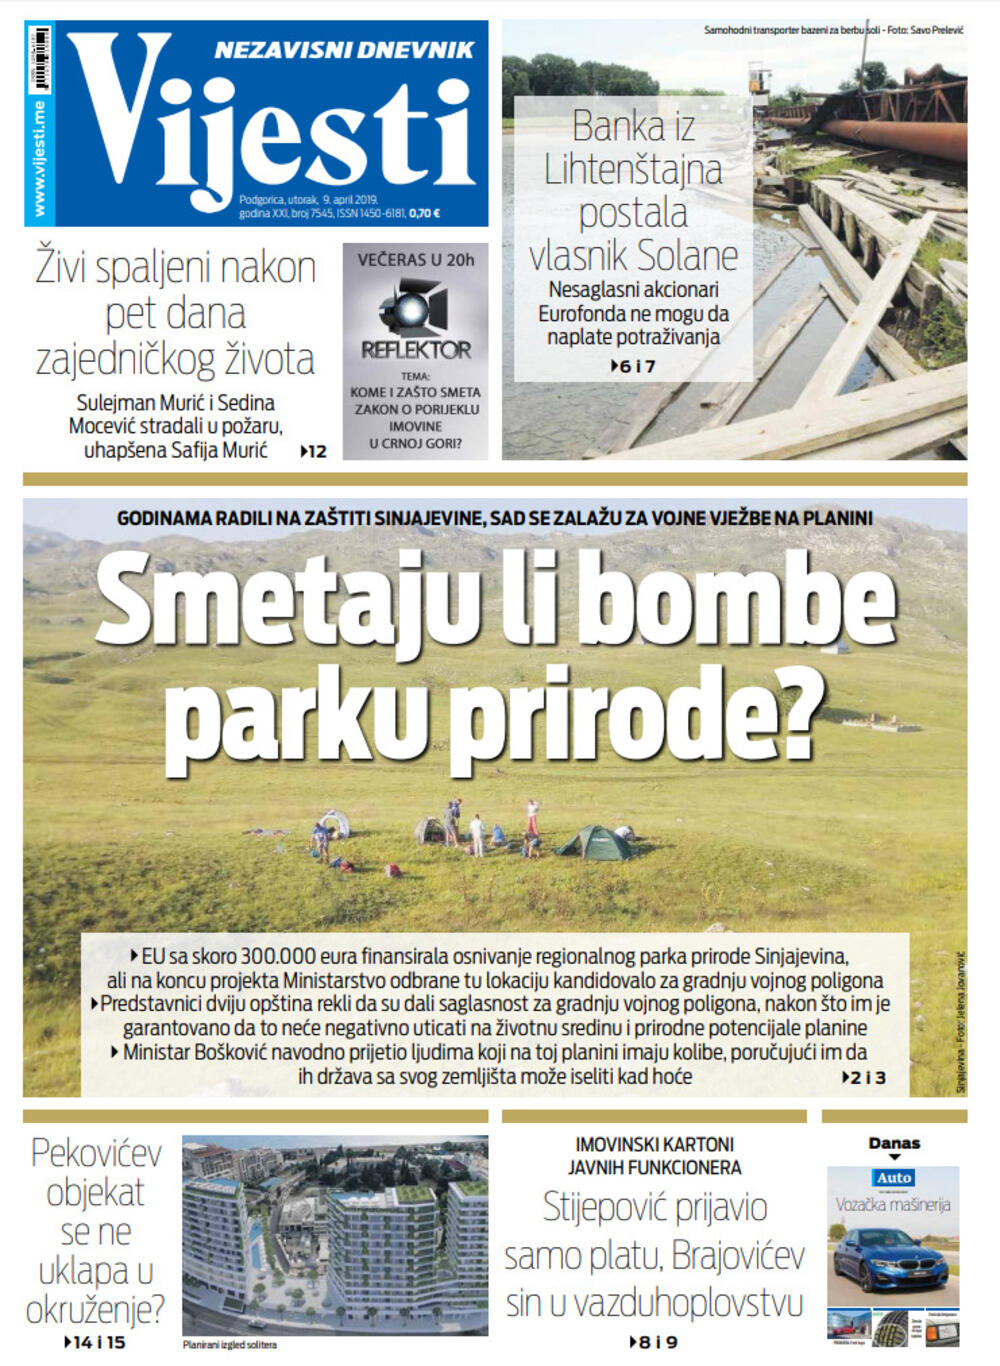 Naslovna strana "Vijesti" za 9. april, Foto: Vijesti